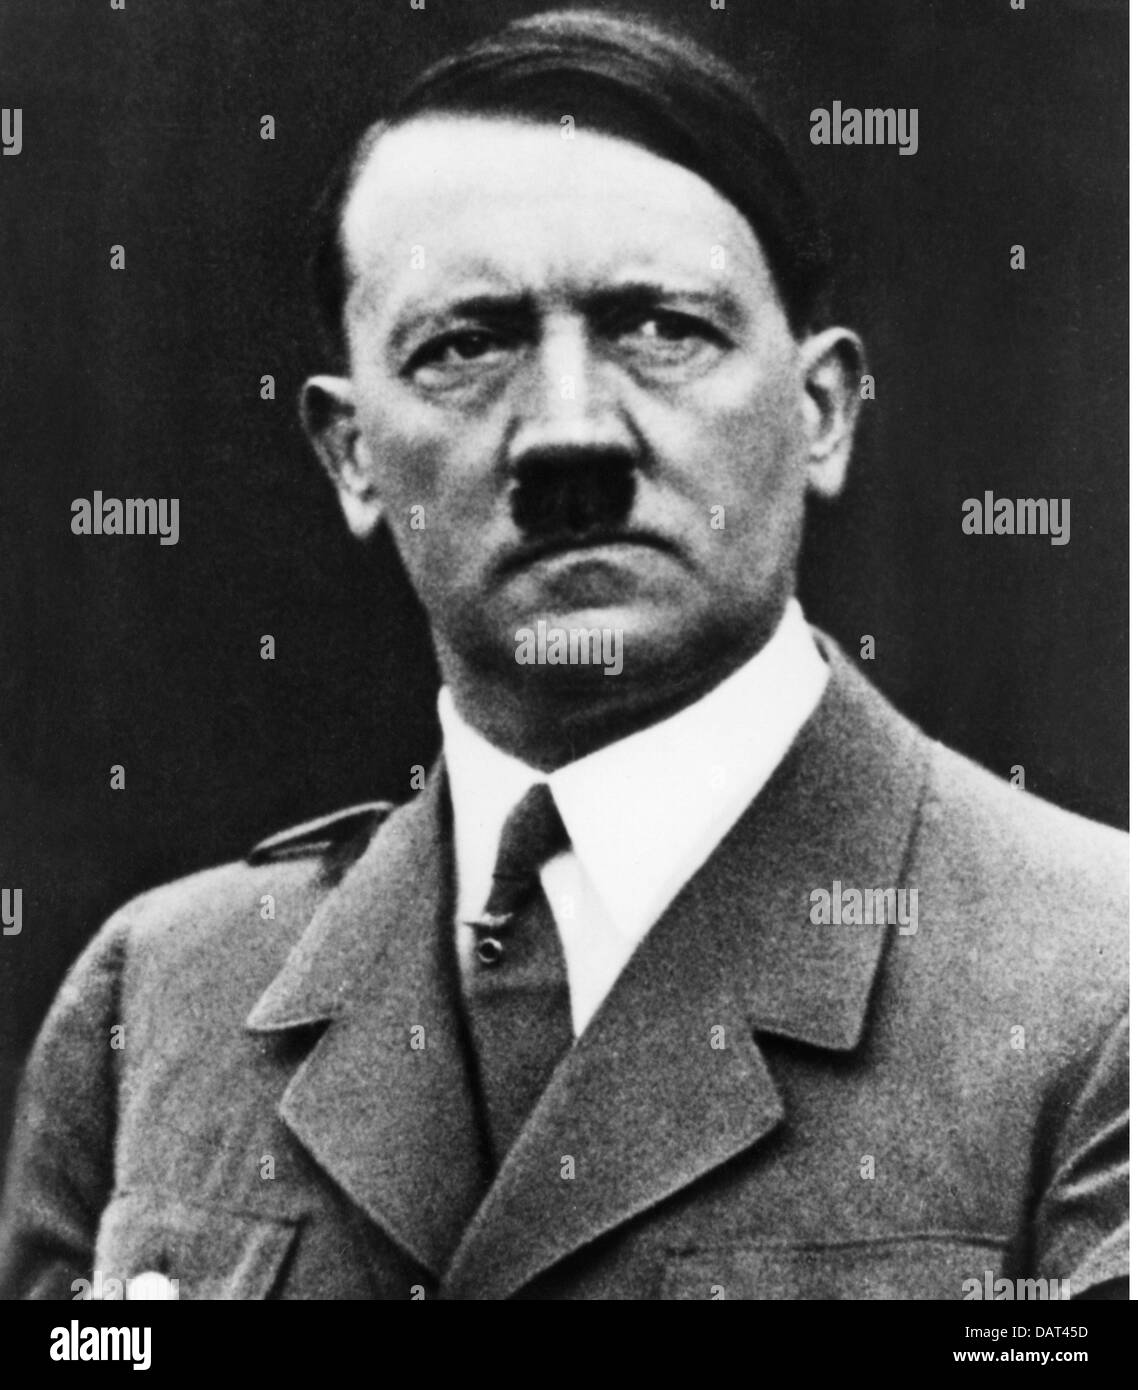 Hitler, Adolf, 20.4.1889 - 30.4.1945, deutscher Politiker (NSDAP), Reichskanzler 30.1.1933 - 30.4.1945, Porträt, 1930er Jahre, Stockfoto